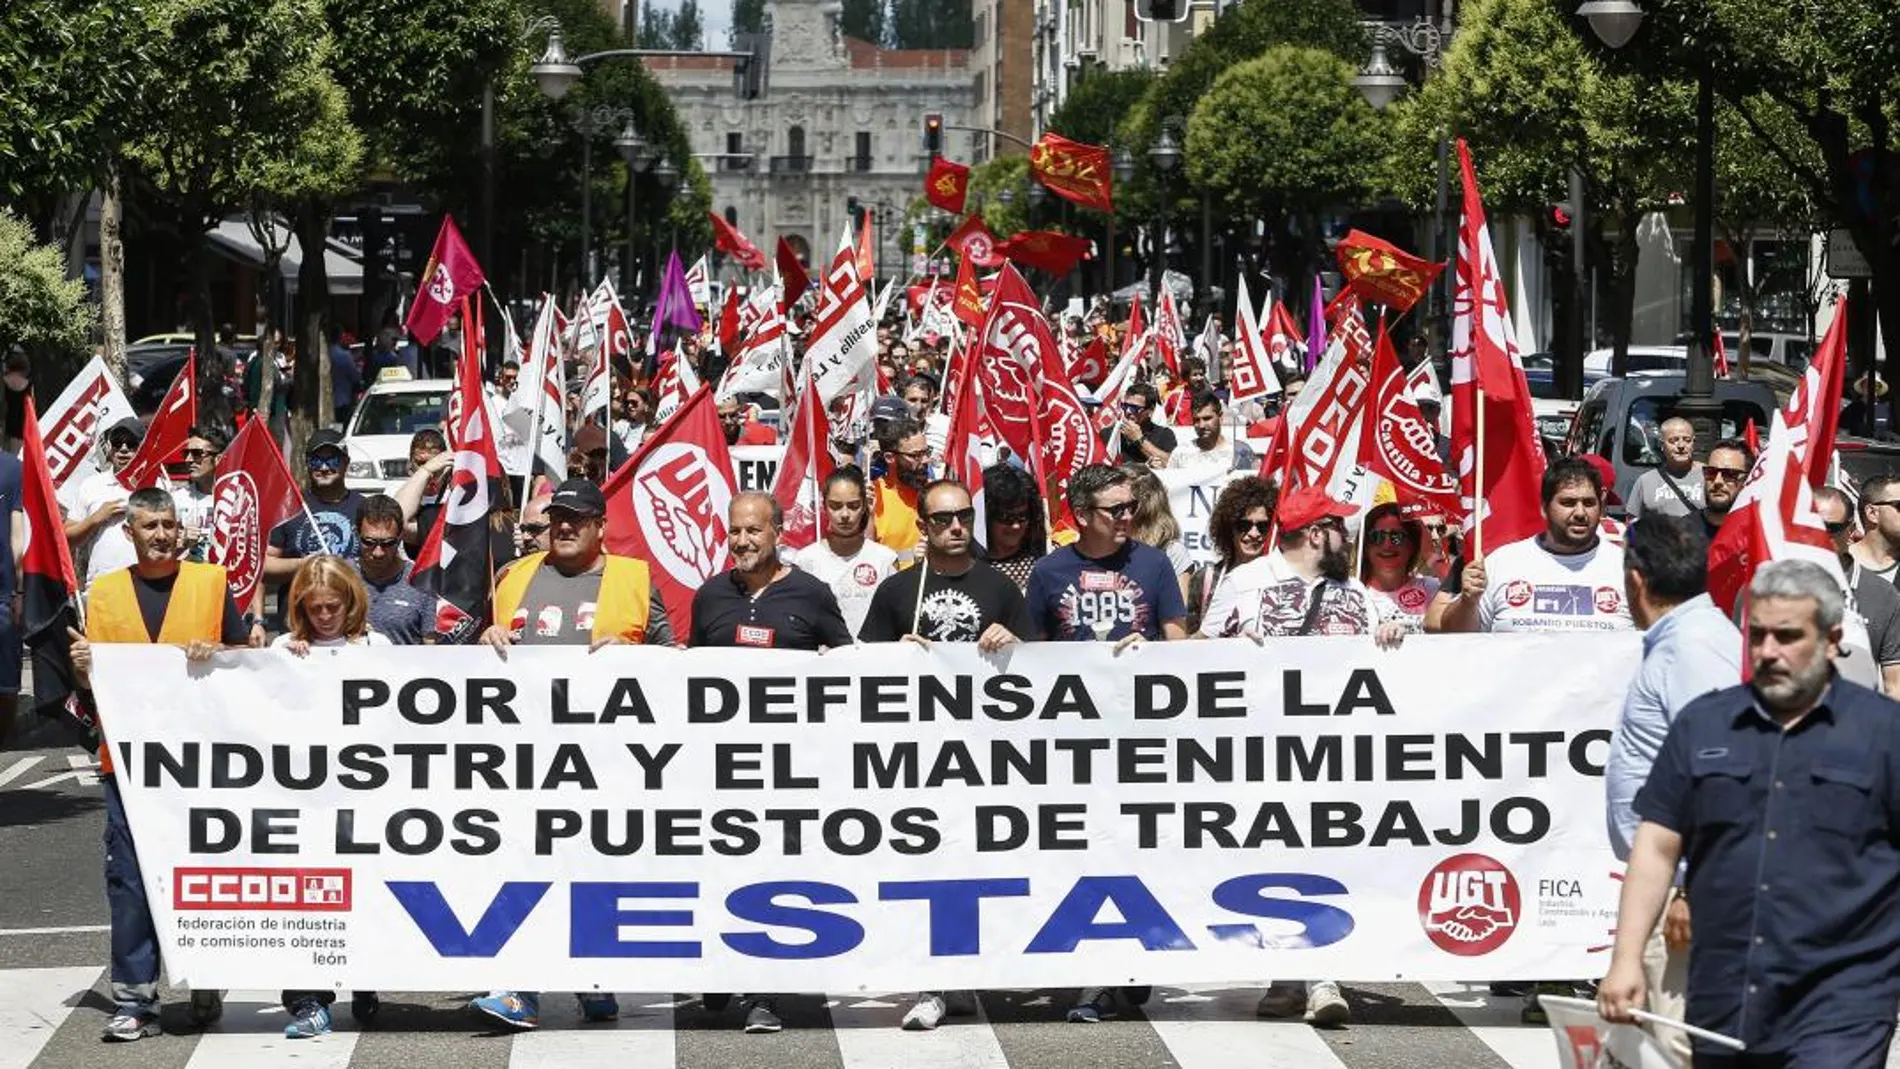 Manifestación en León por la defensa de los puestos de trabajo en Vestas